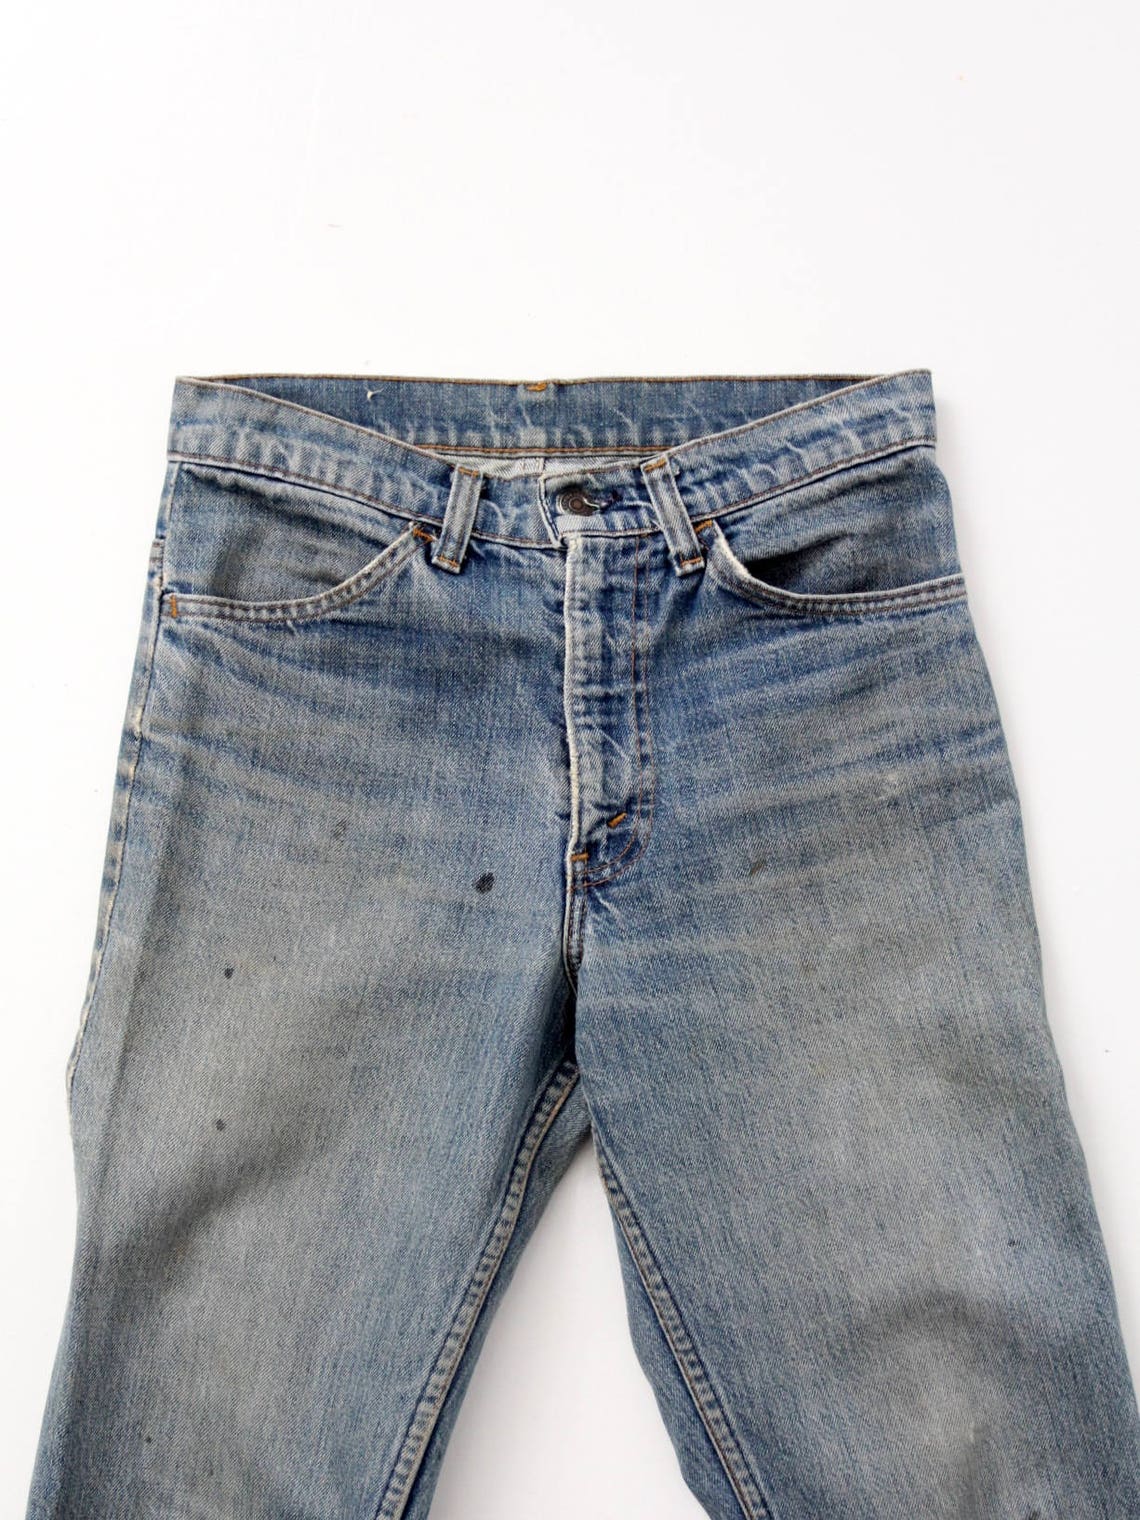 1970s Levis 646 Jeans Vintage Levis Flare Leg 29 X 32 - Etsy